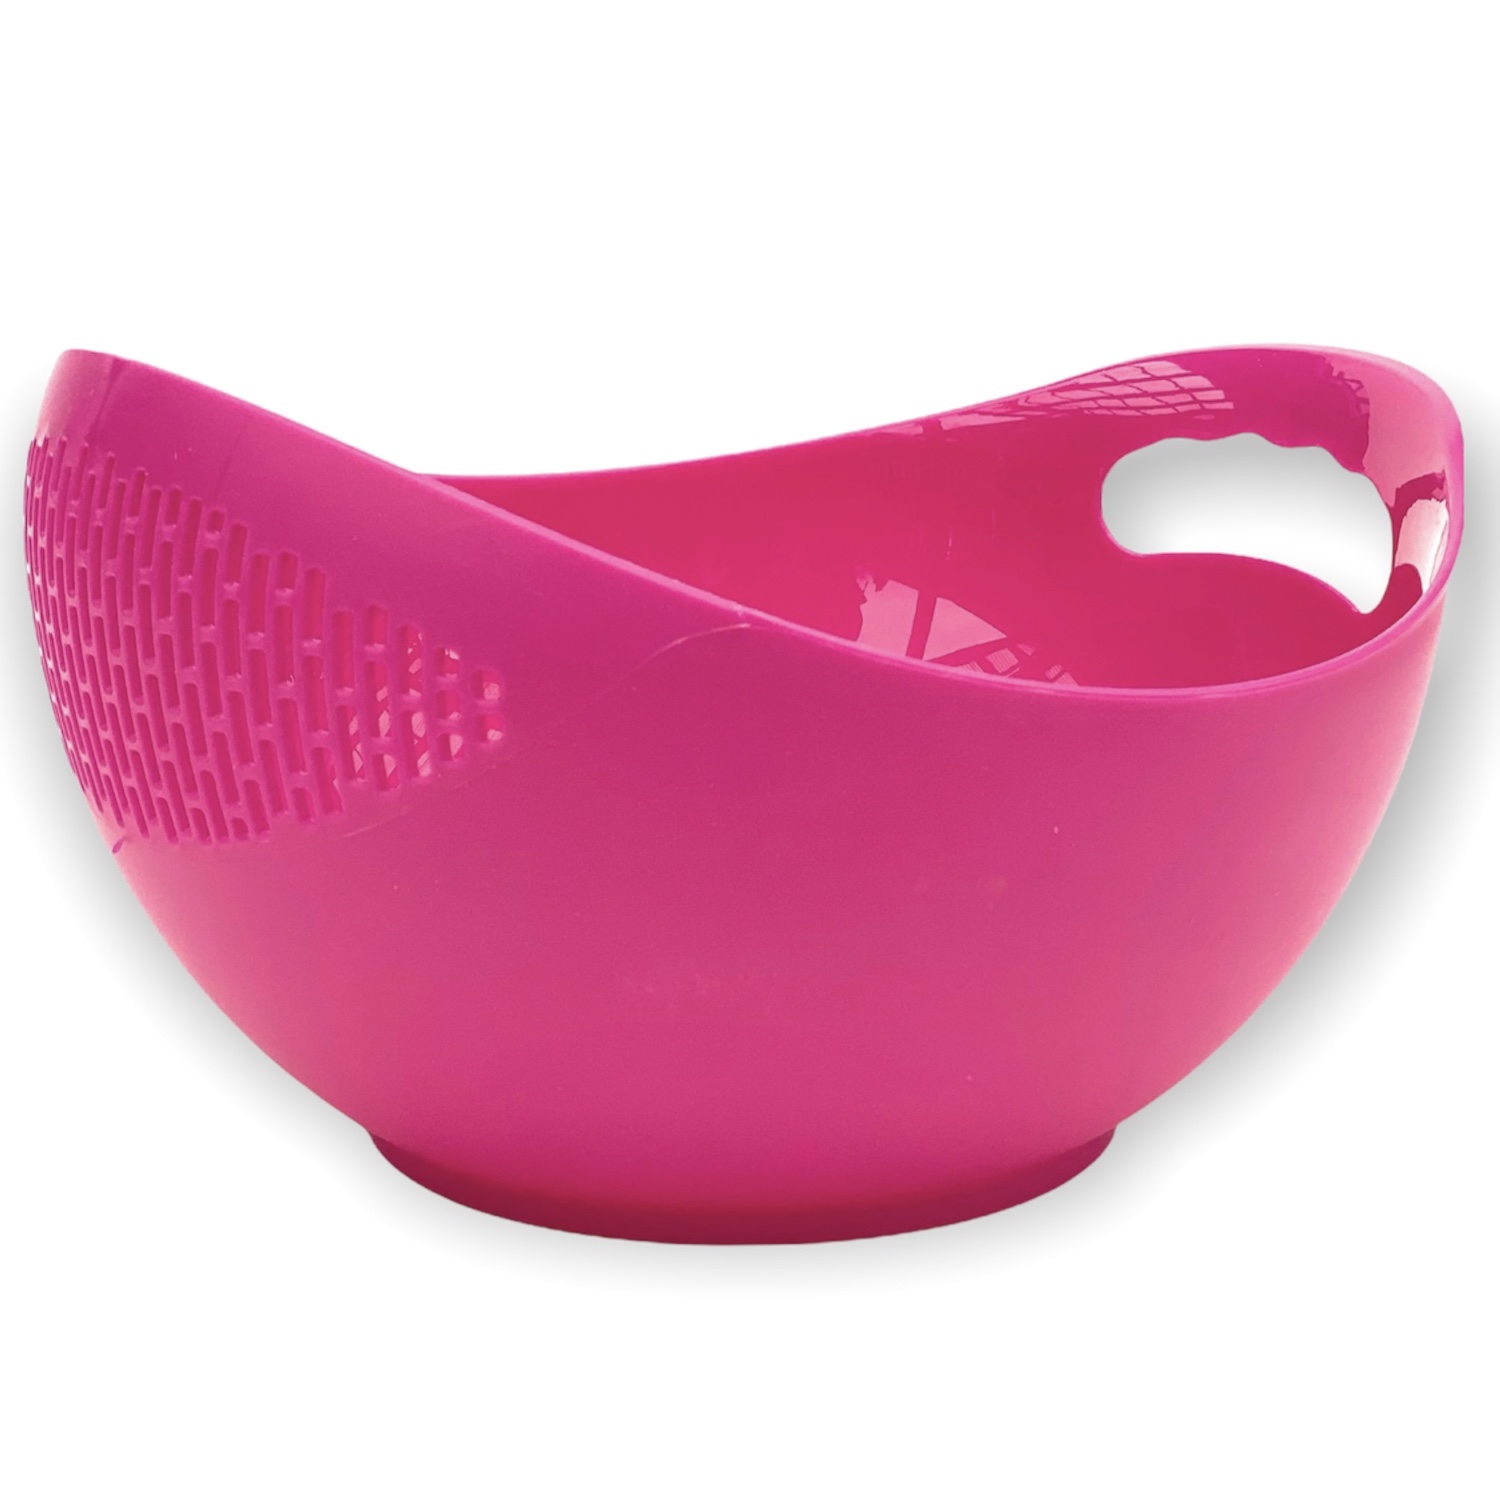 Nudelsieb Pink 521 Kunststoff Waschschüssel Salatschüssel DanDiBo-Ambiente Spülmaschinenfest - Küchensieb Sieb Abtropfsieb mit Schüssel